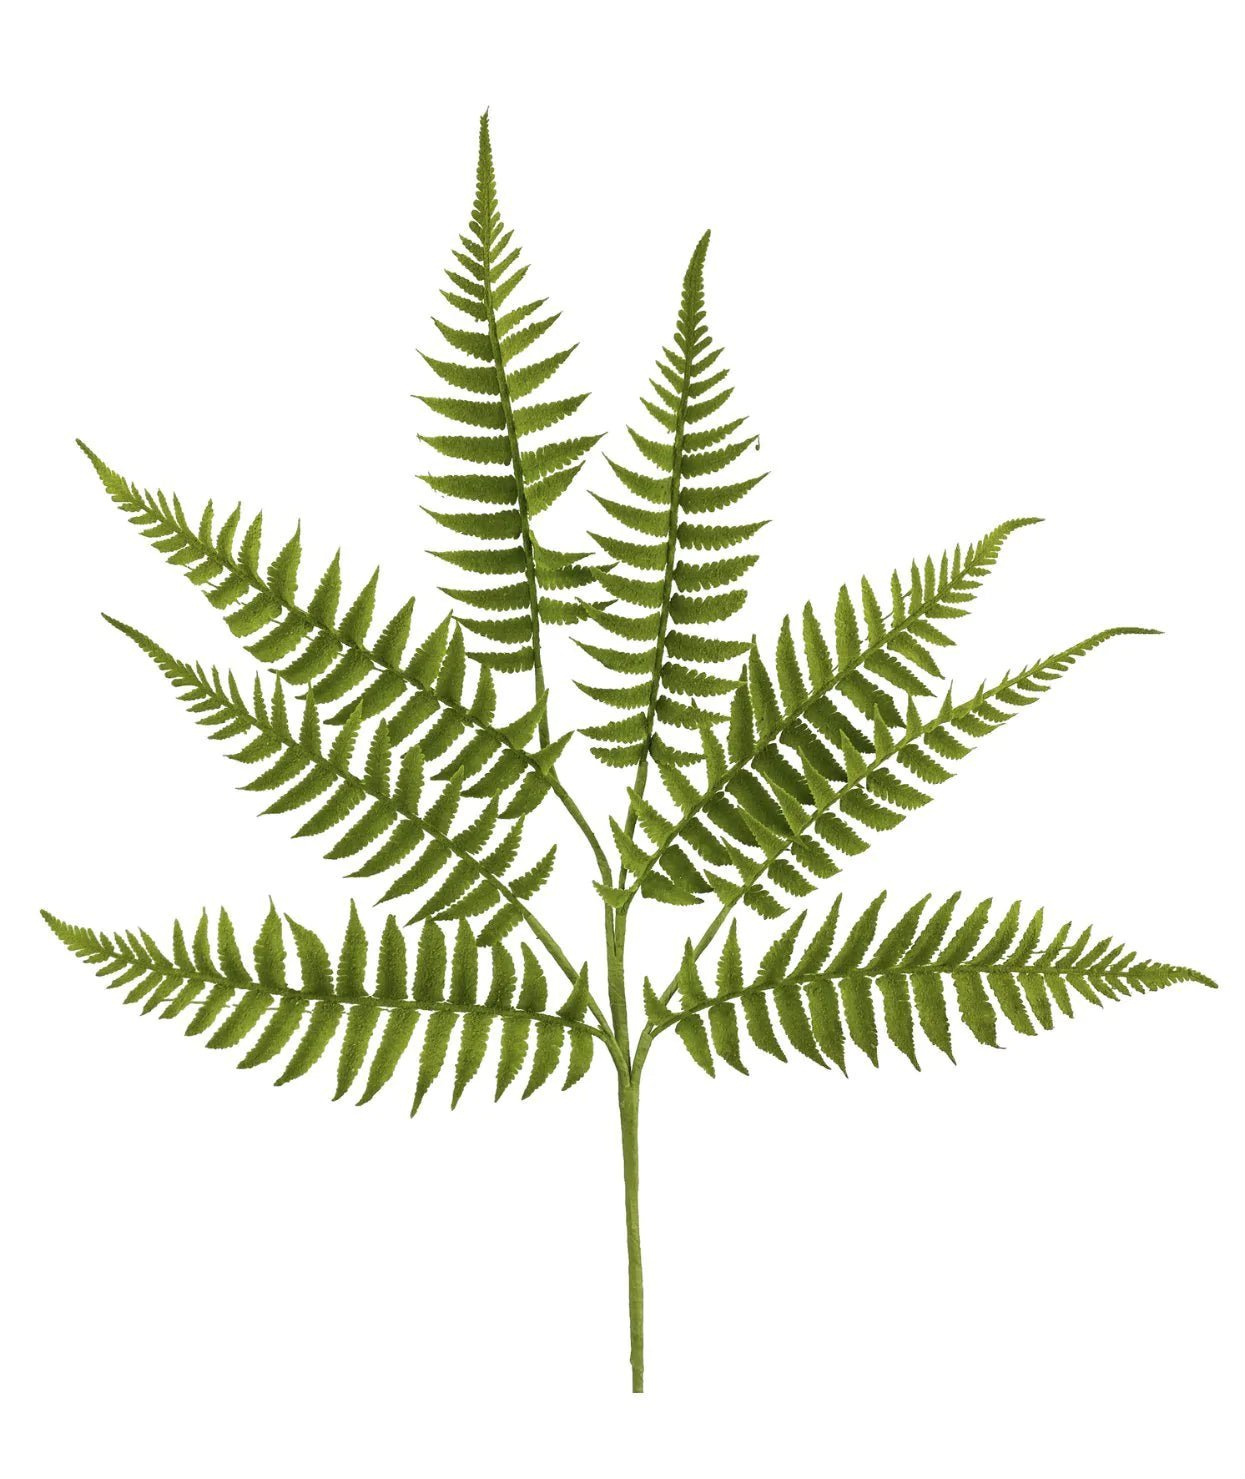 Moss fern spray - Greenery MarketArtificial Flora13521gn